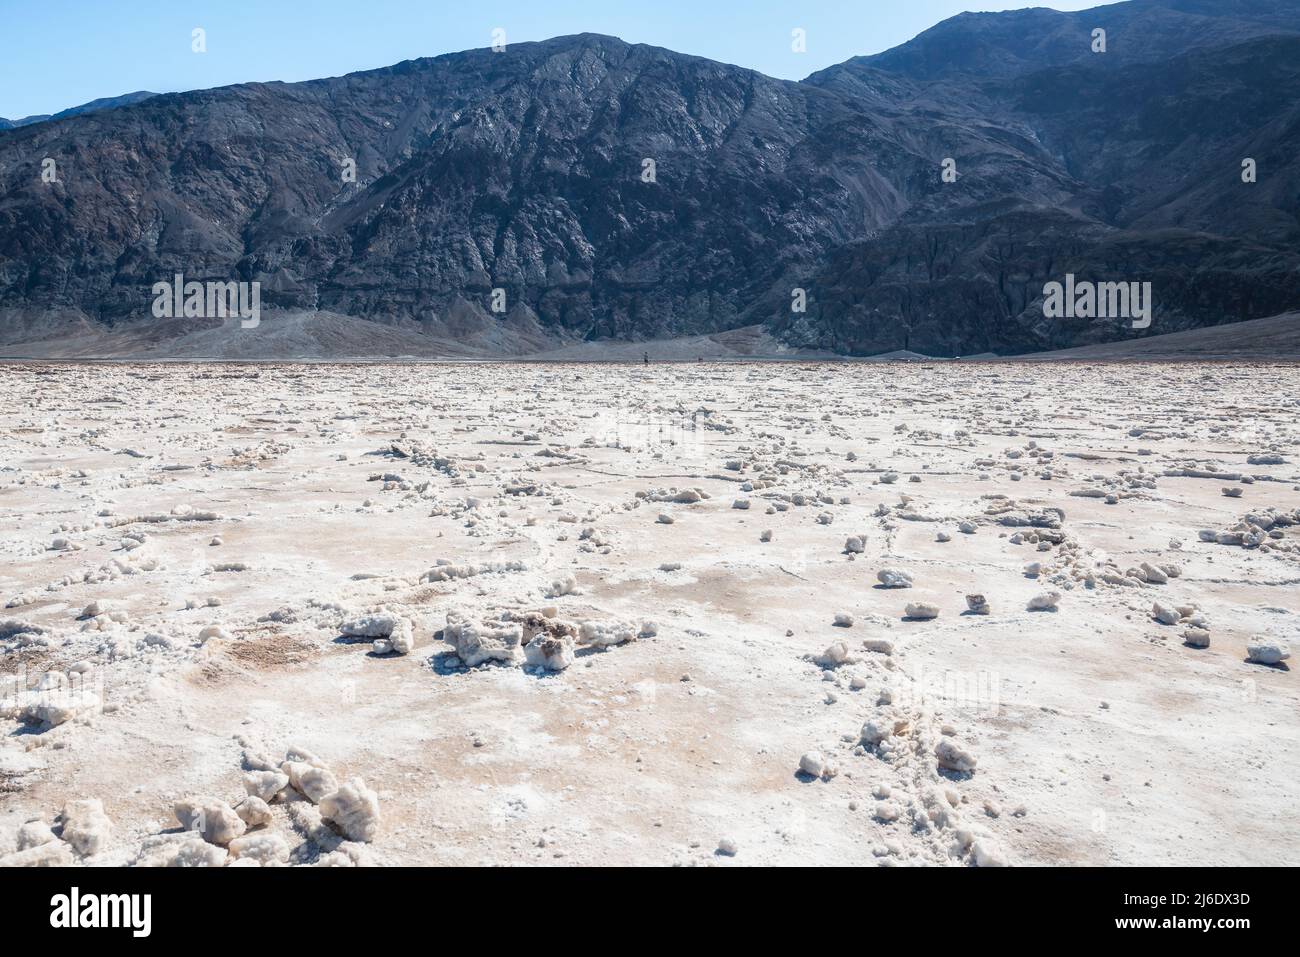 Les salines du bassin de Badwater couvrent près de 200 000 kilomètres carrés, parmi les plus grandes salines protégées au monde. Parc national de Death Valley, Californie Banque D'Images